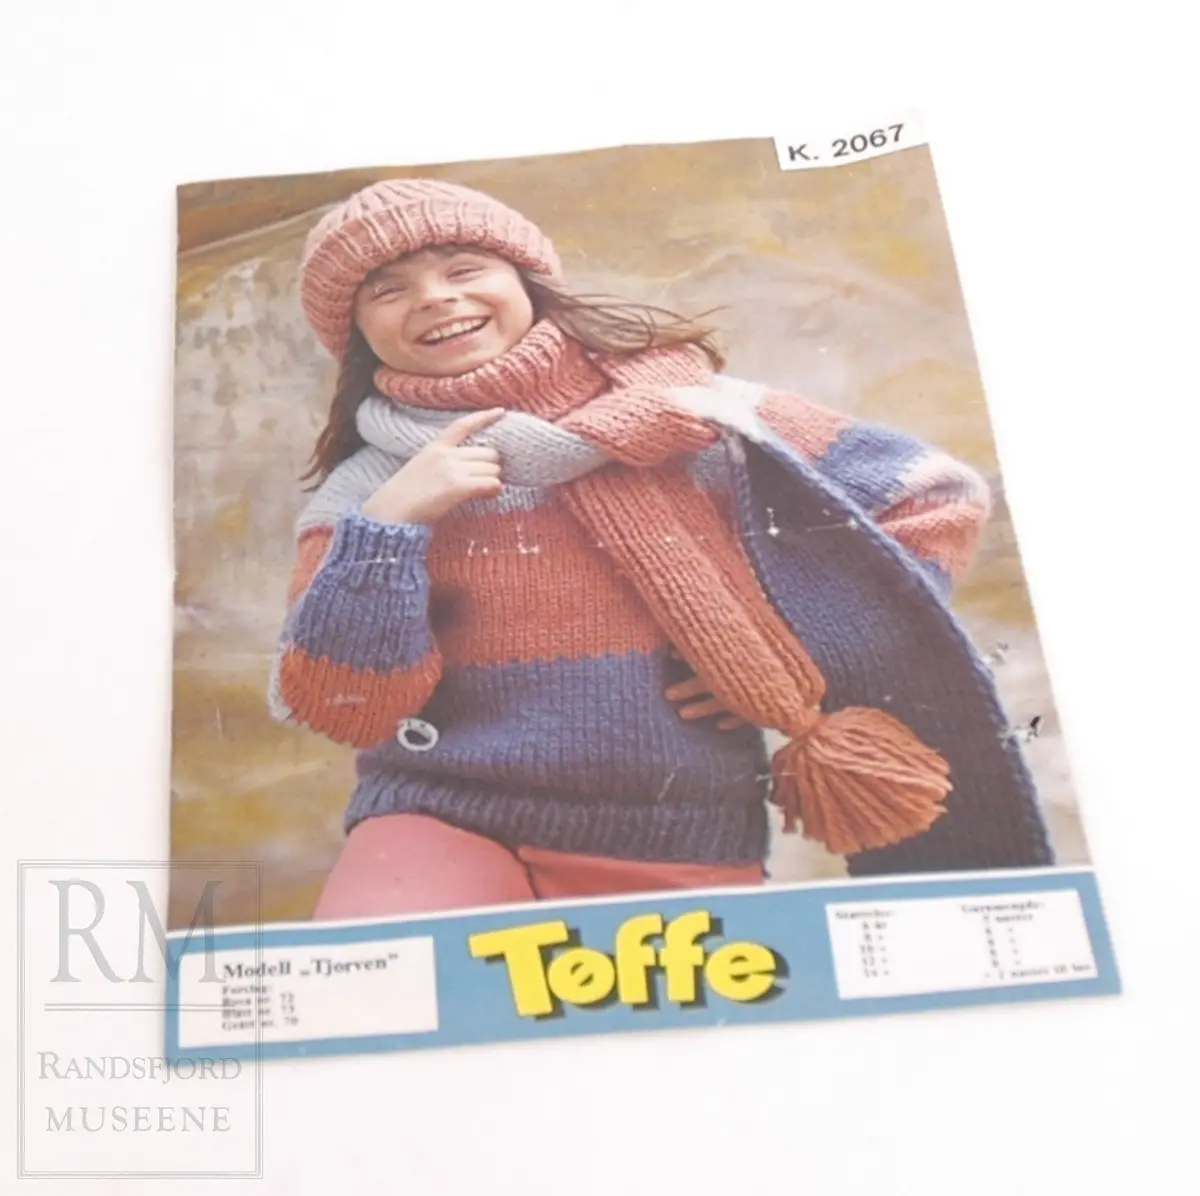  A4 ark brettet i to med foto på fremsiden og oppskrift inni og bak på arket
Modell "Tjorven"
Jente med strikket genser, lue og skjerf i lilla og rosa.
